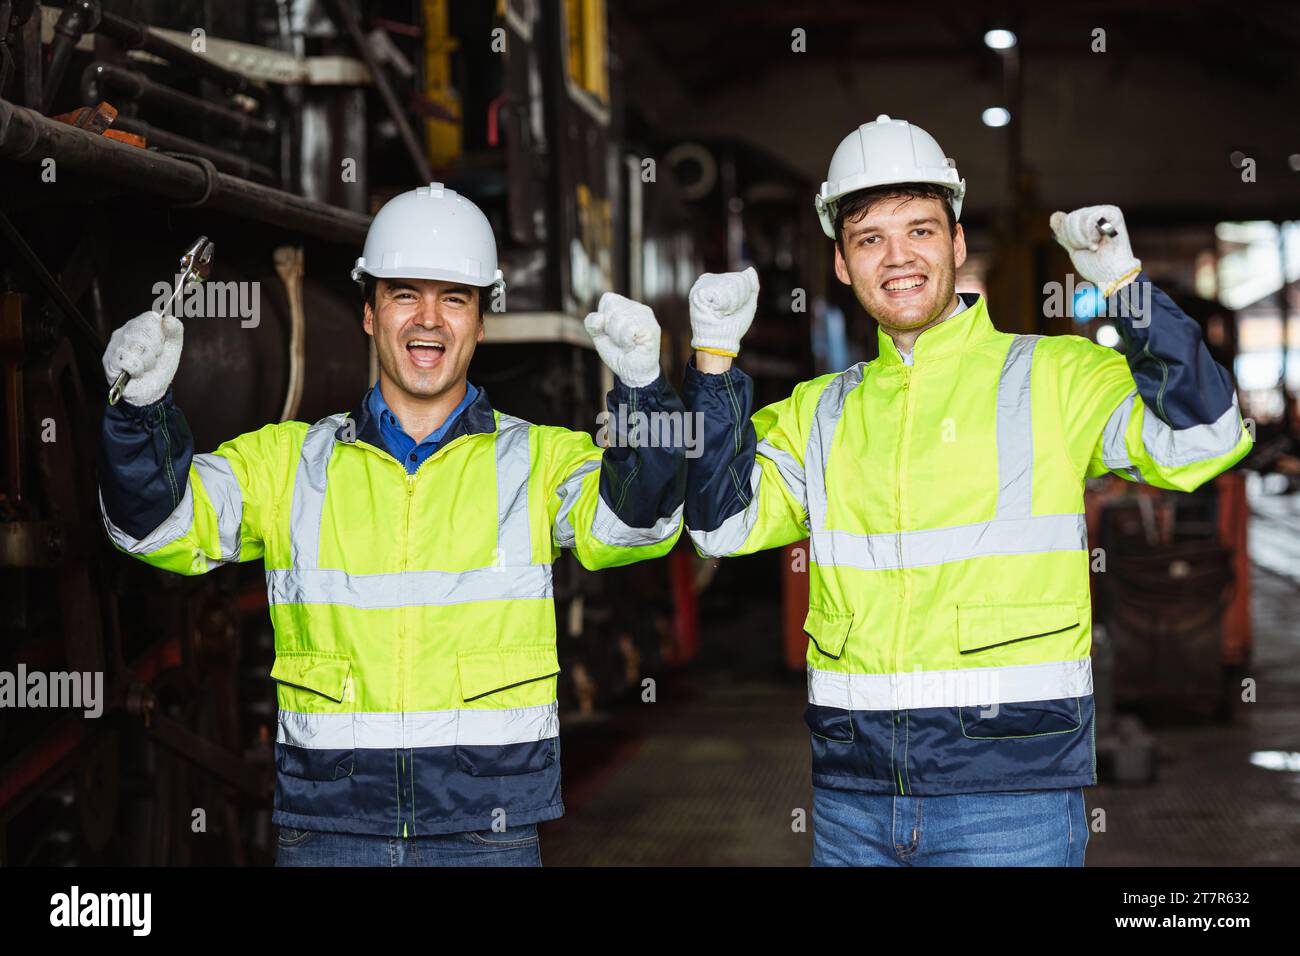 Glücklicher, fröhlicher Ingenieur männlicher Teammechaniker Mitarbeiter, der reflektierende Sicherheitskleidung mit Schutzhelm trägt, genießt das Lächeln zusammen Stockfoto